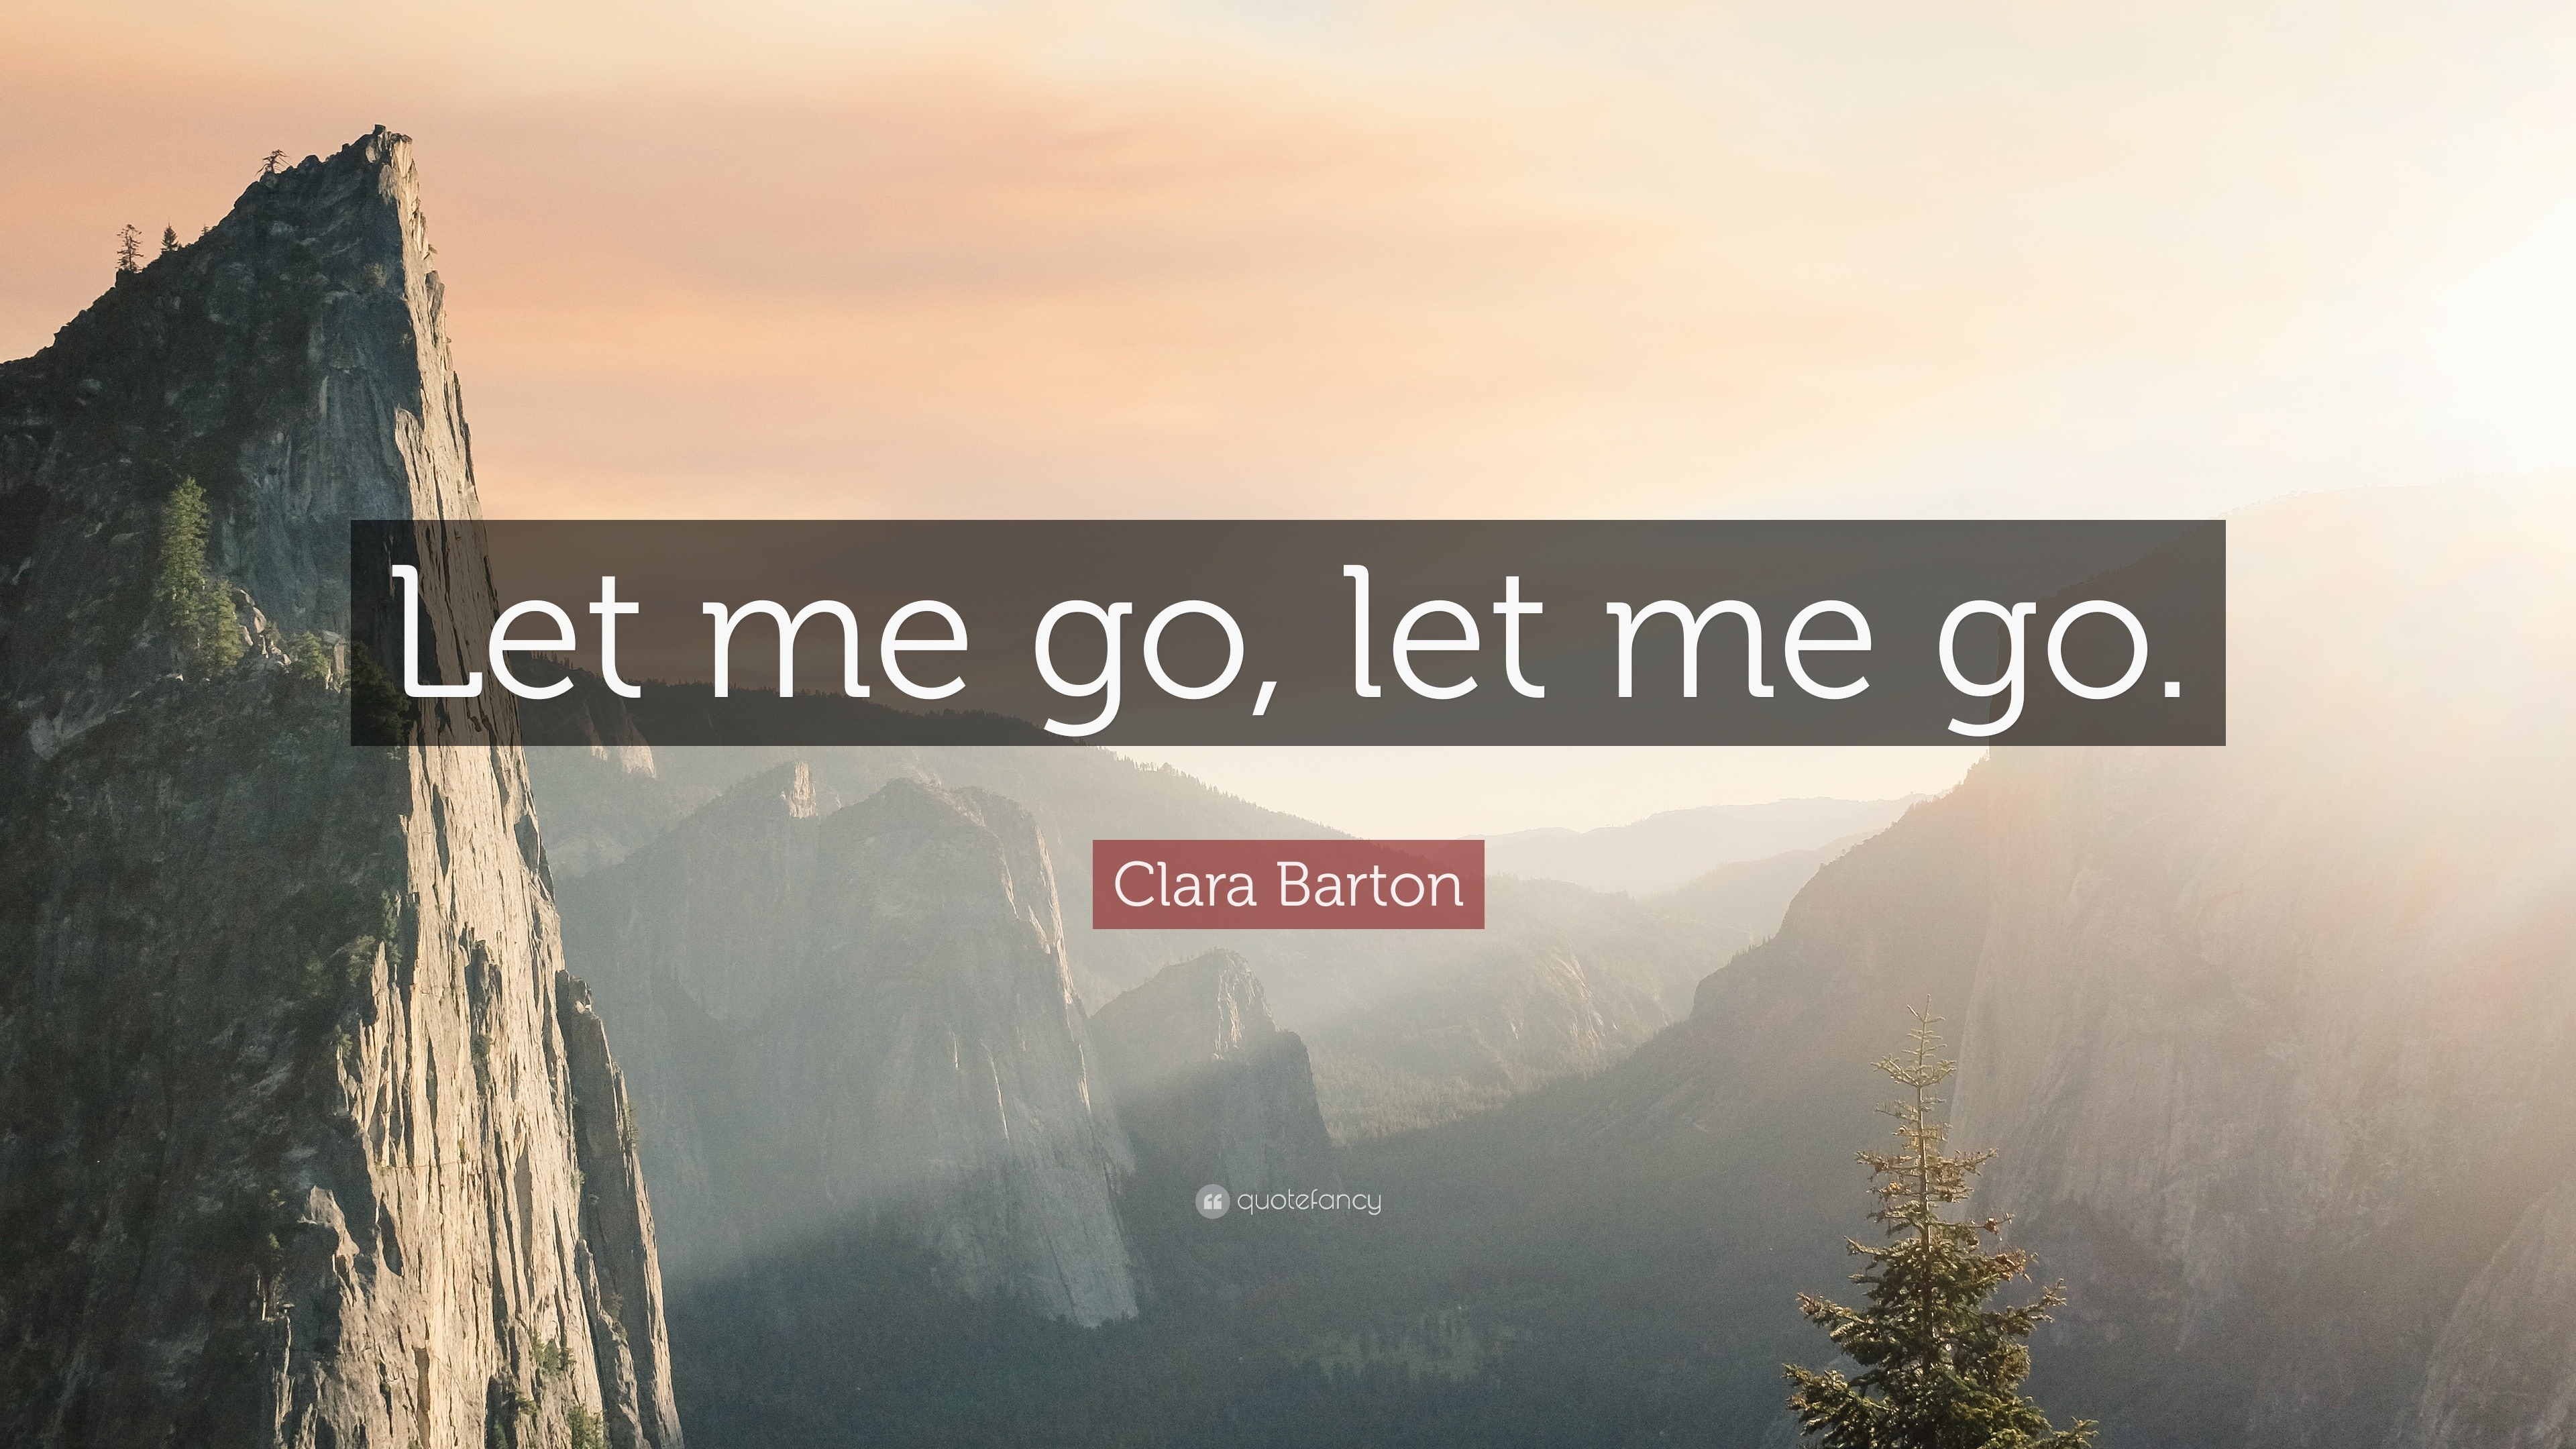 Clara Barton Quote: “Let me go, let me go.”